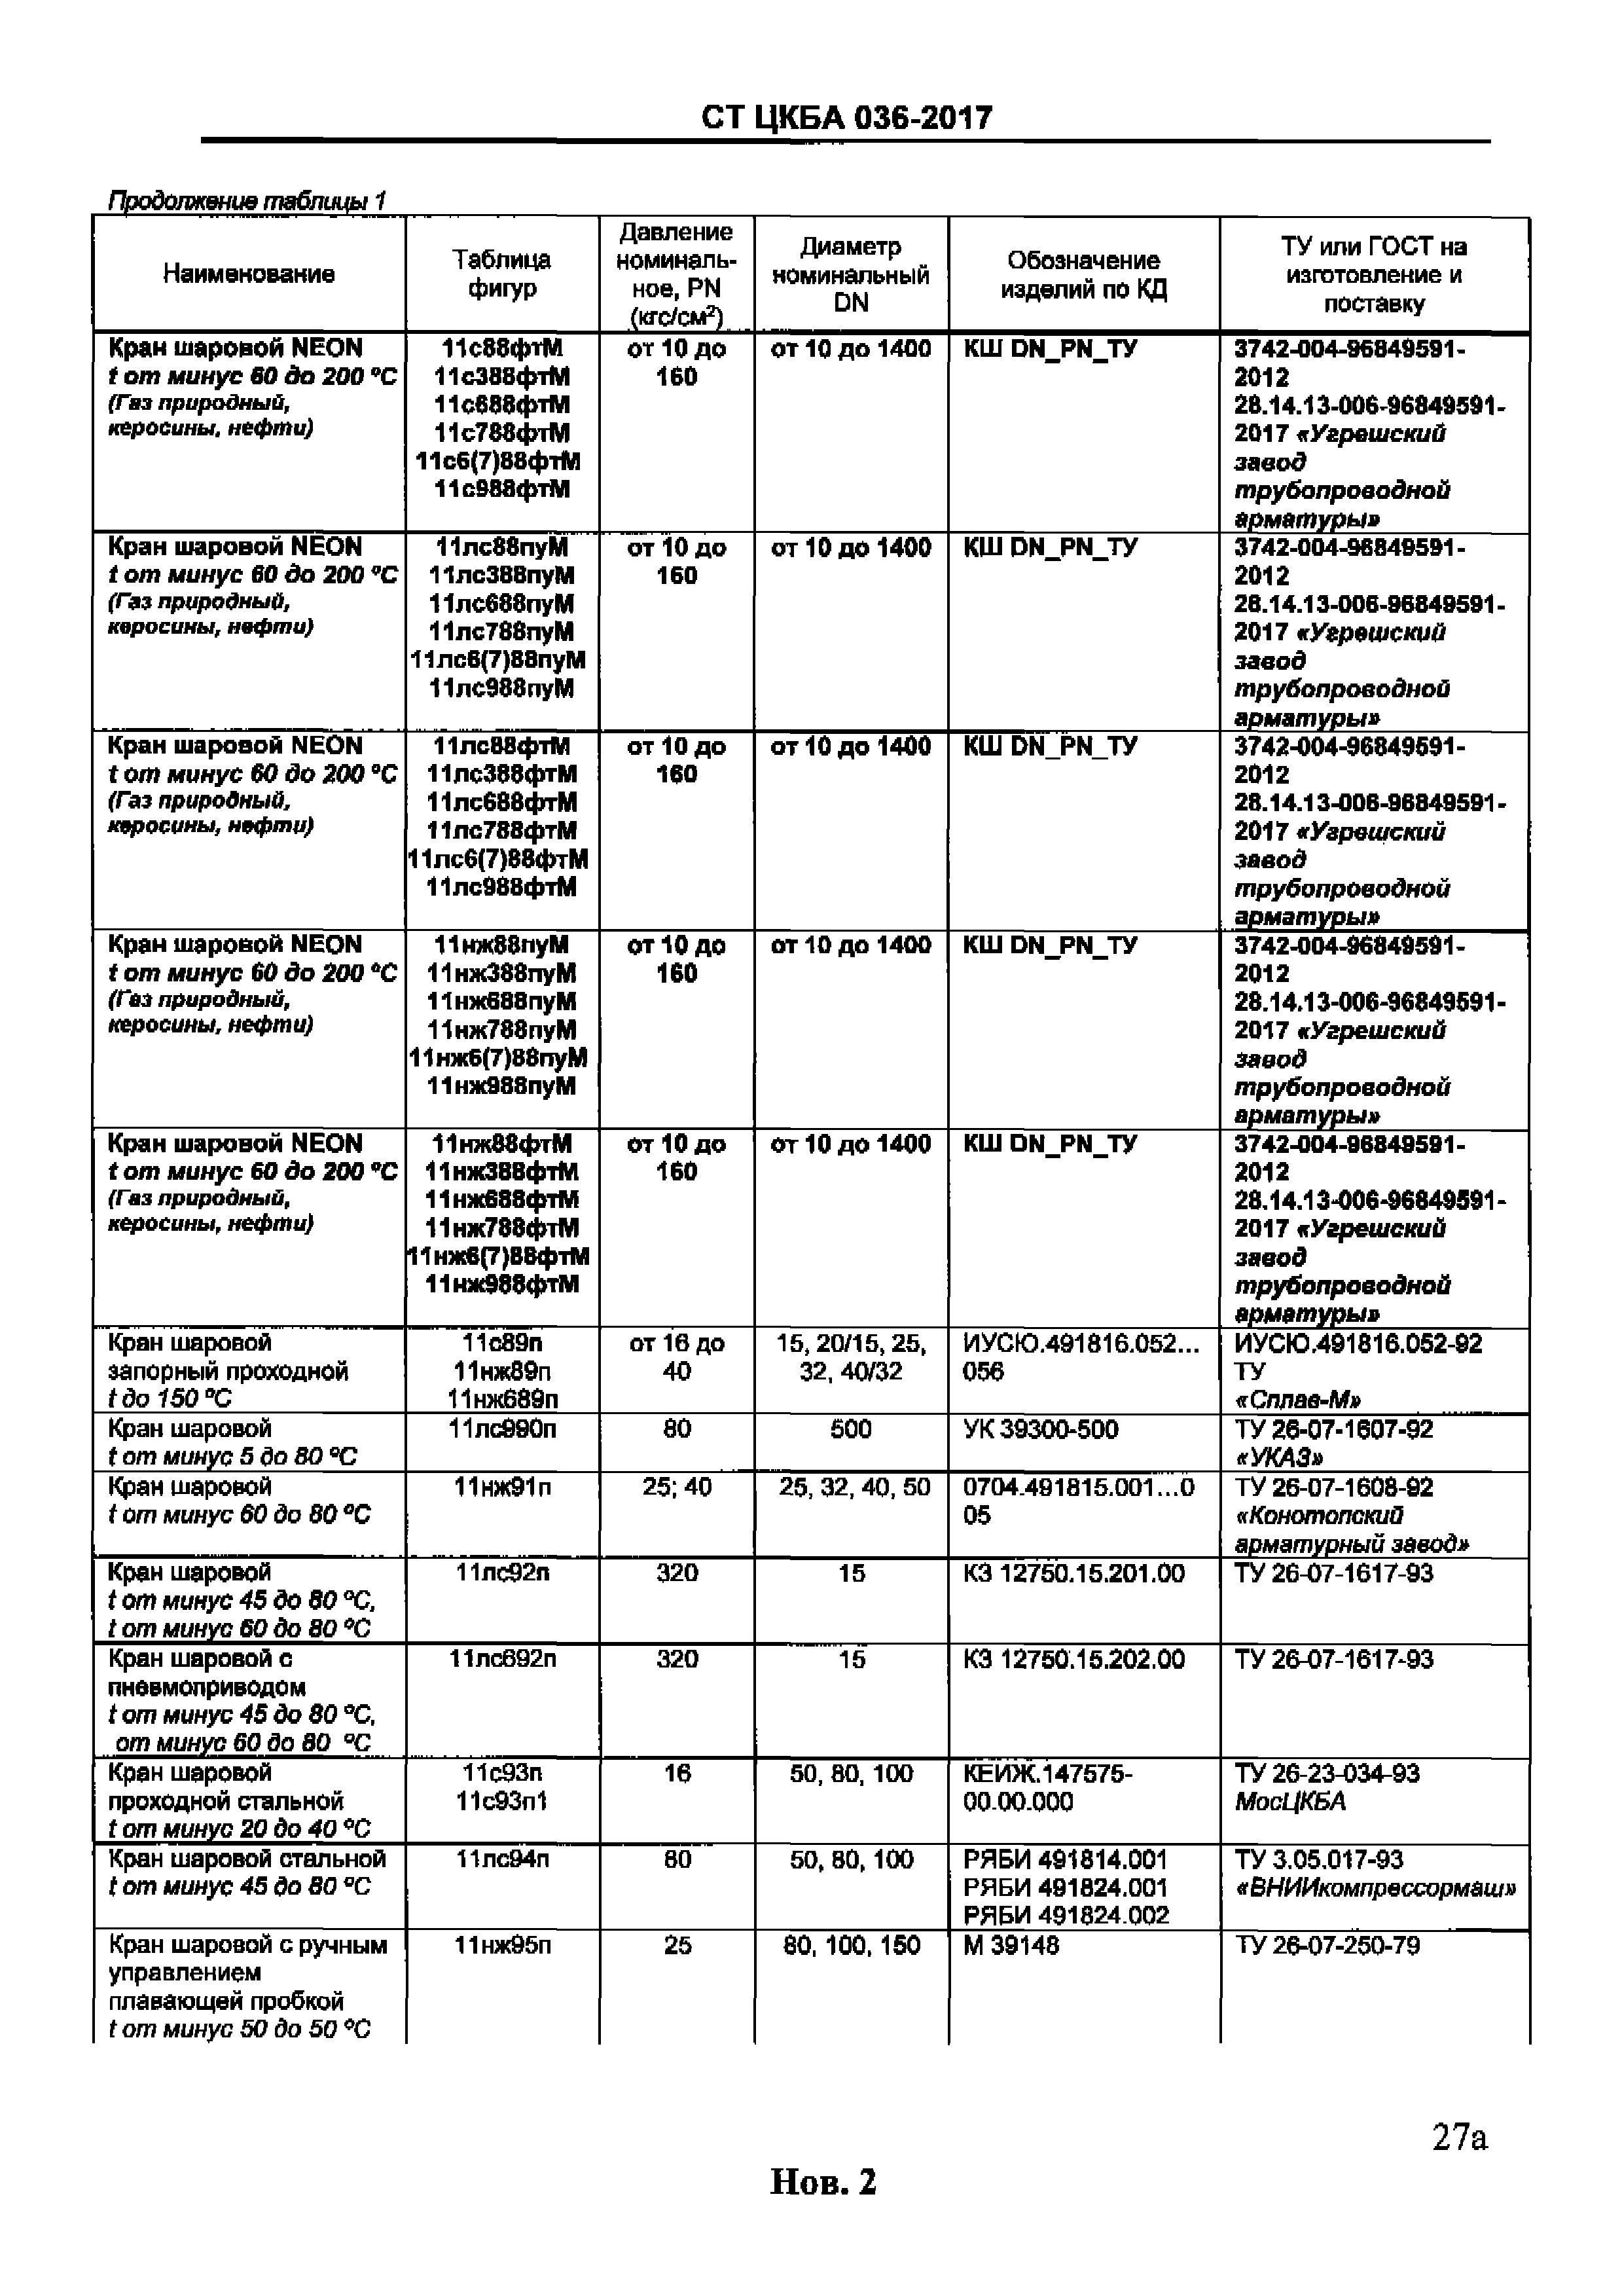 Таблица фигур арматуры ЦКБА